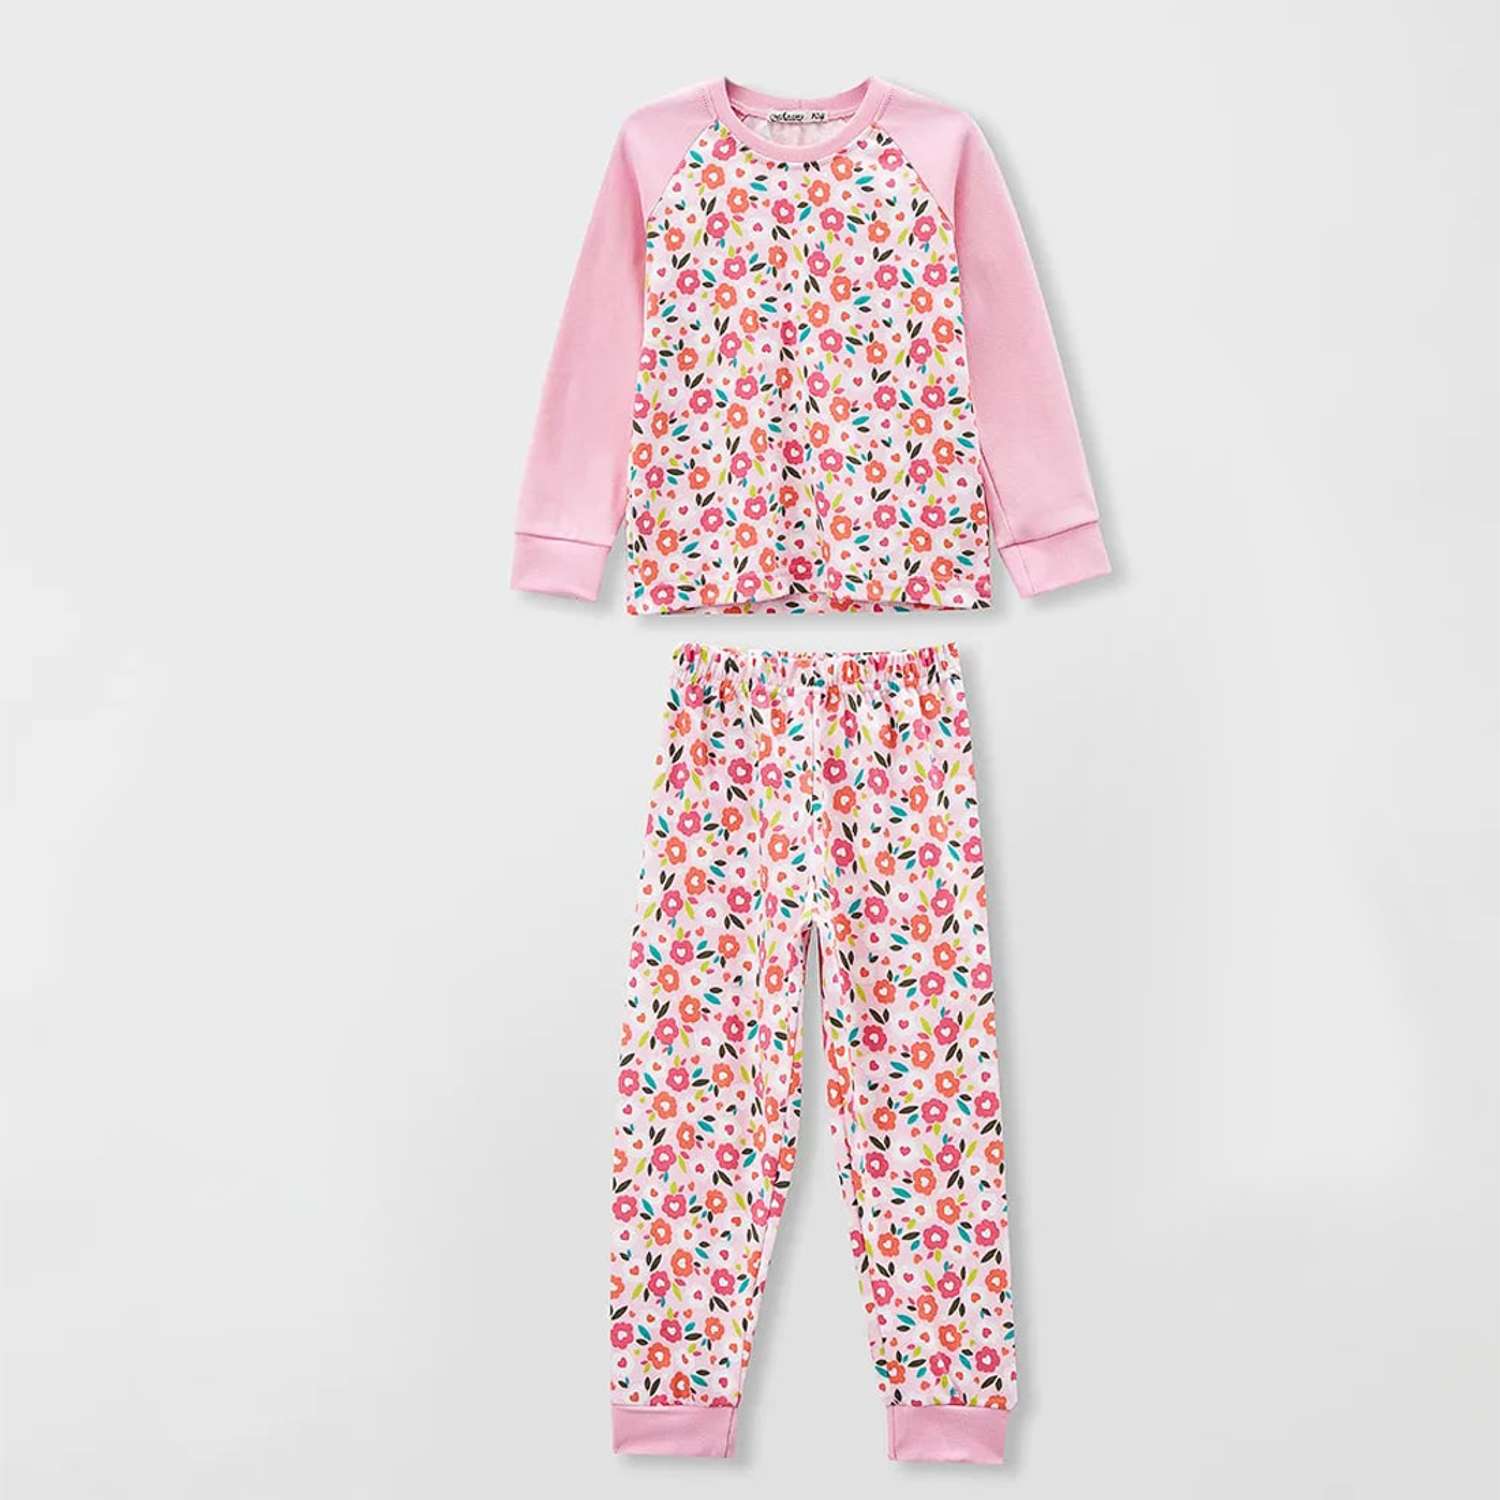 Пижама Агапэ 8301_розовый цветы - фото 11